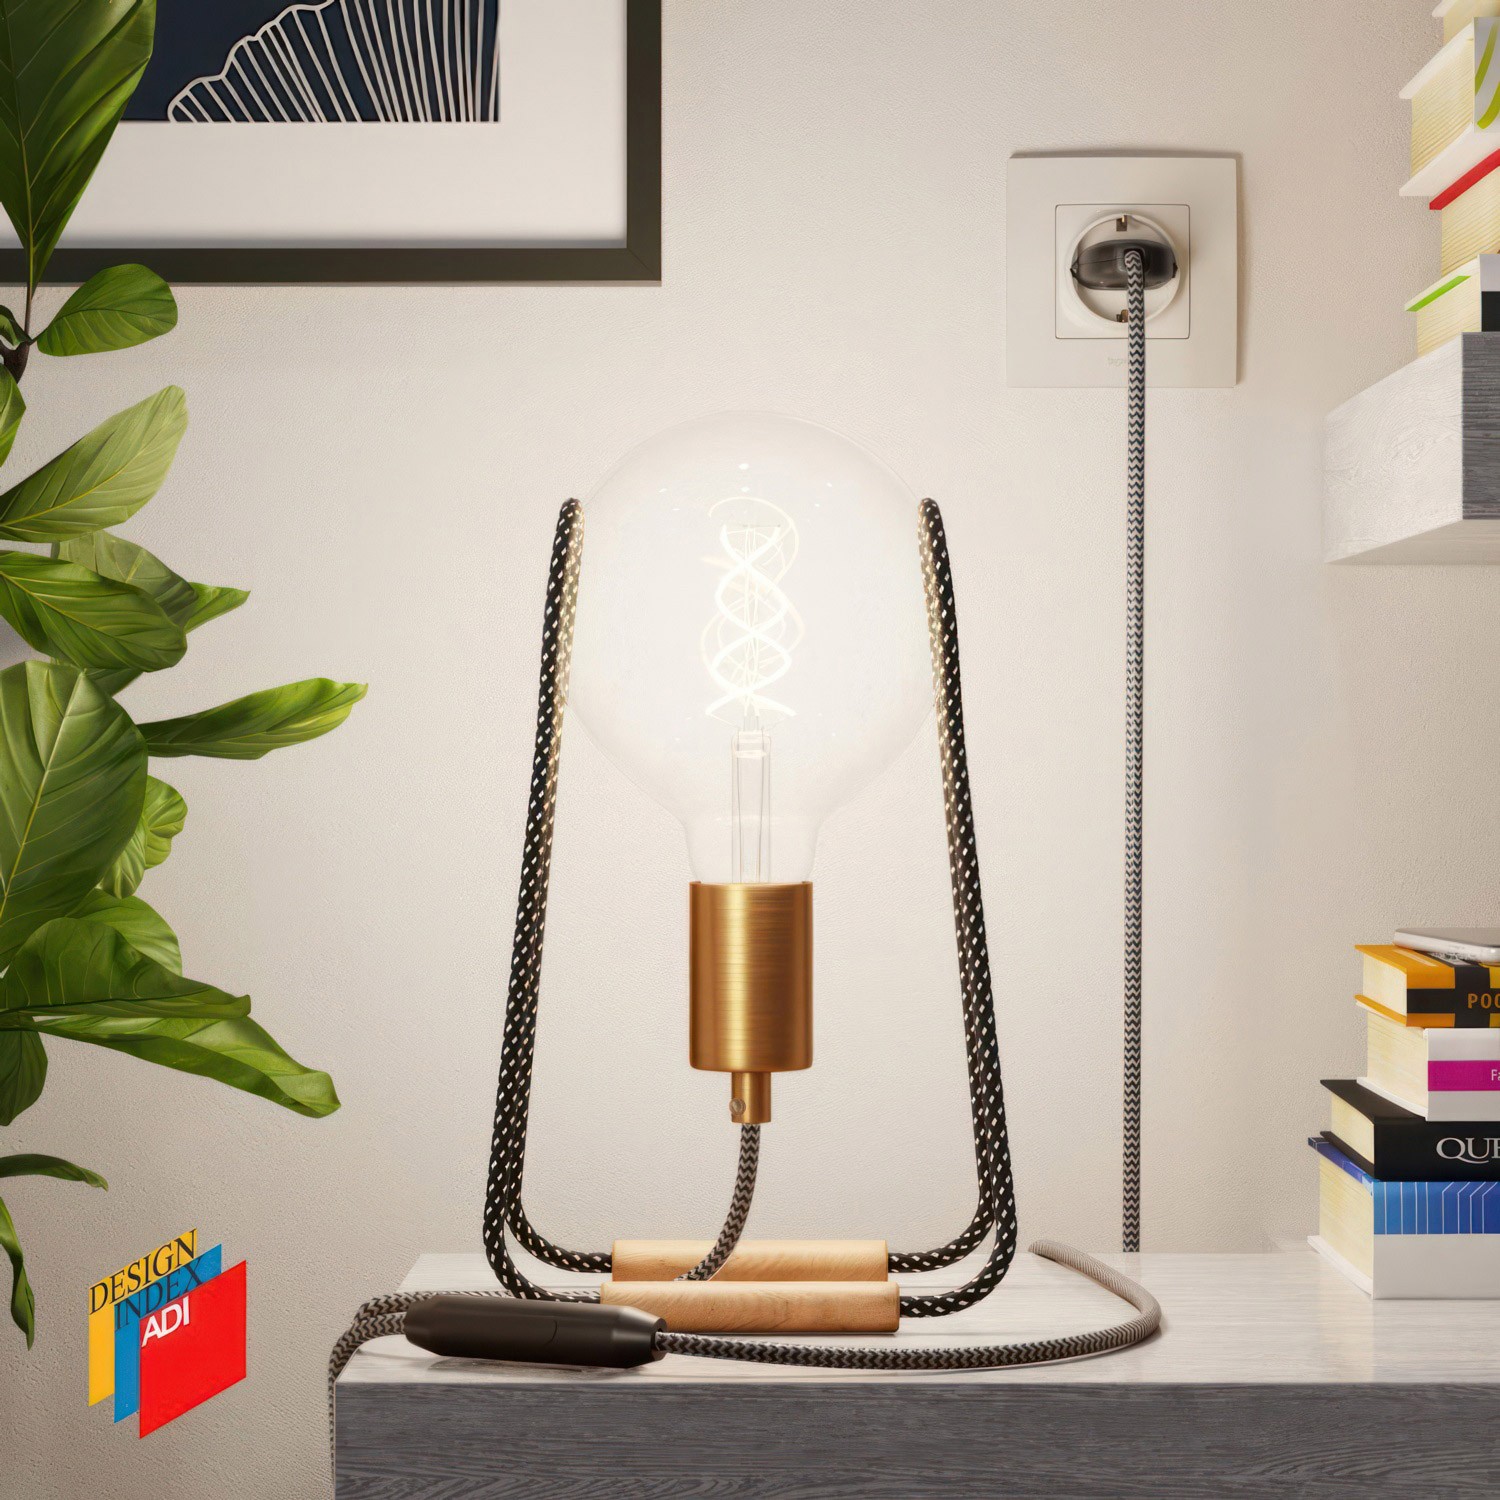 Taché Metal, lámpara de mesa con cable textil, interruptor y clavija de 2 polos